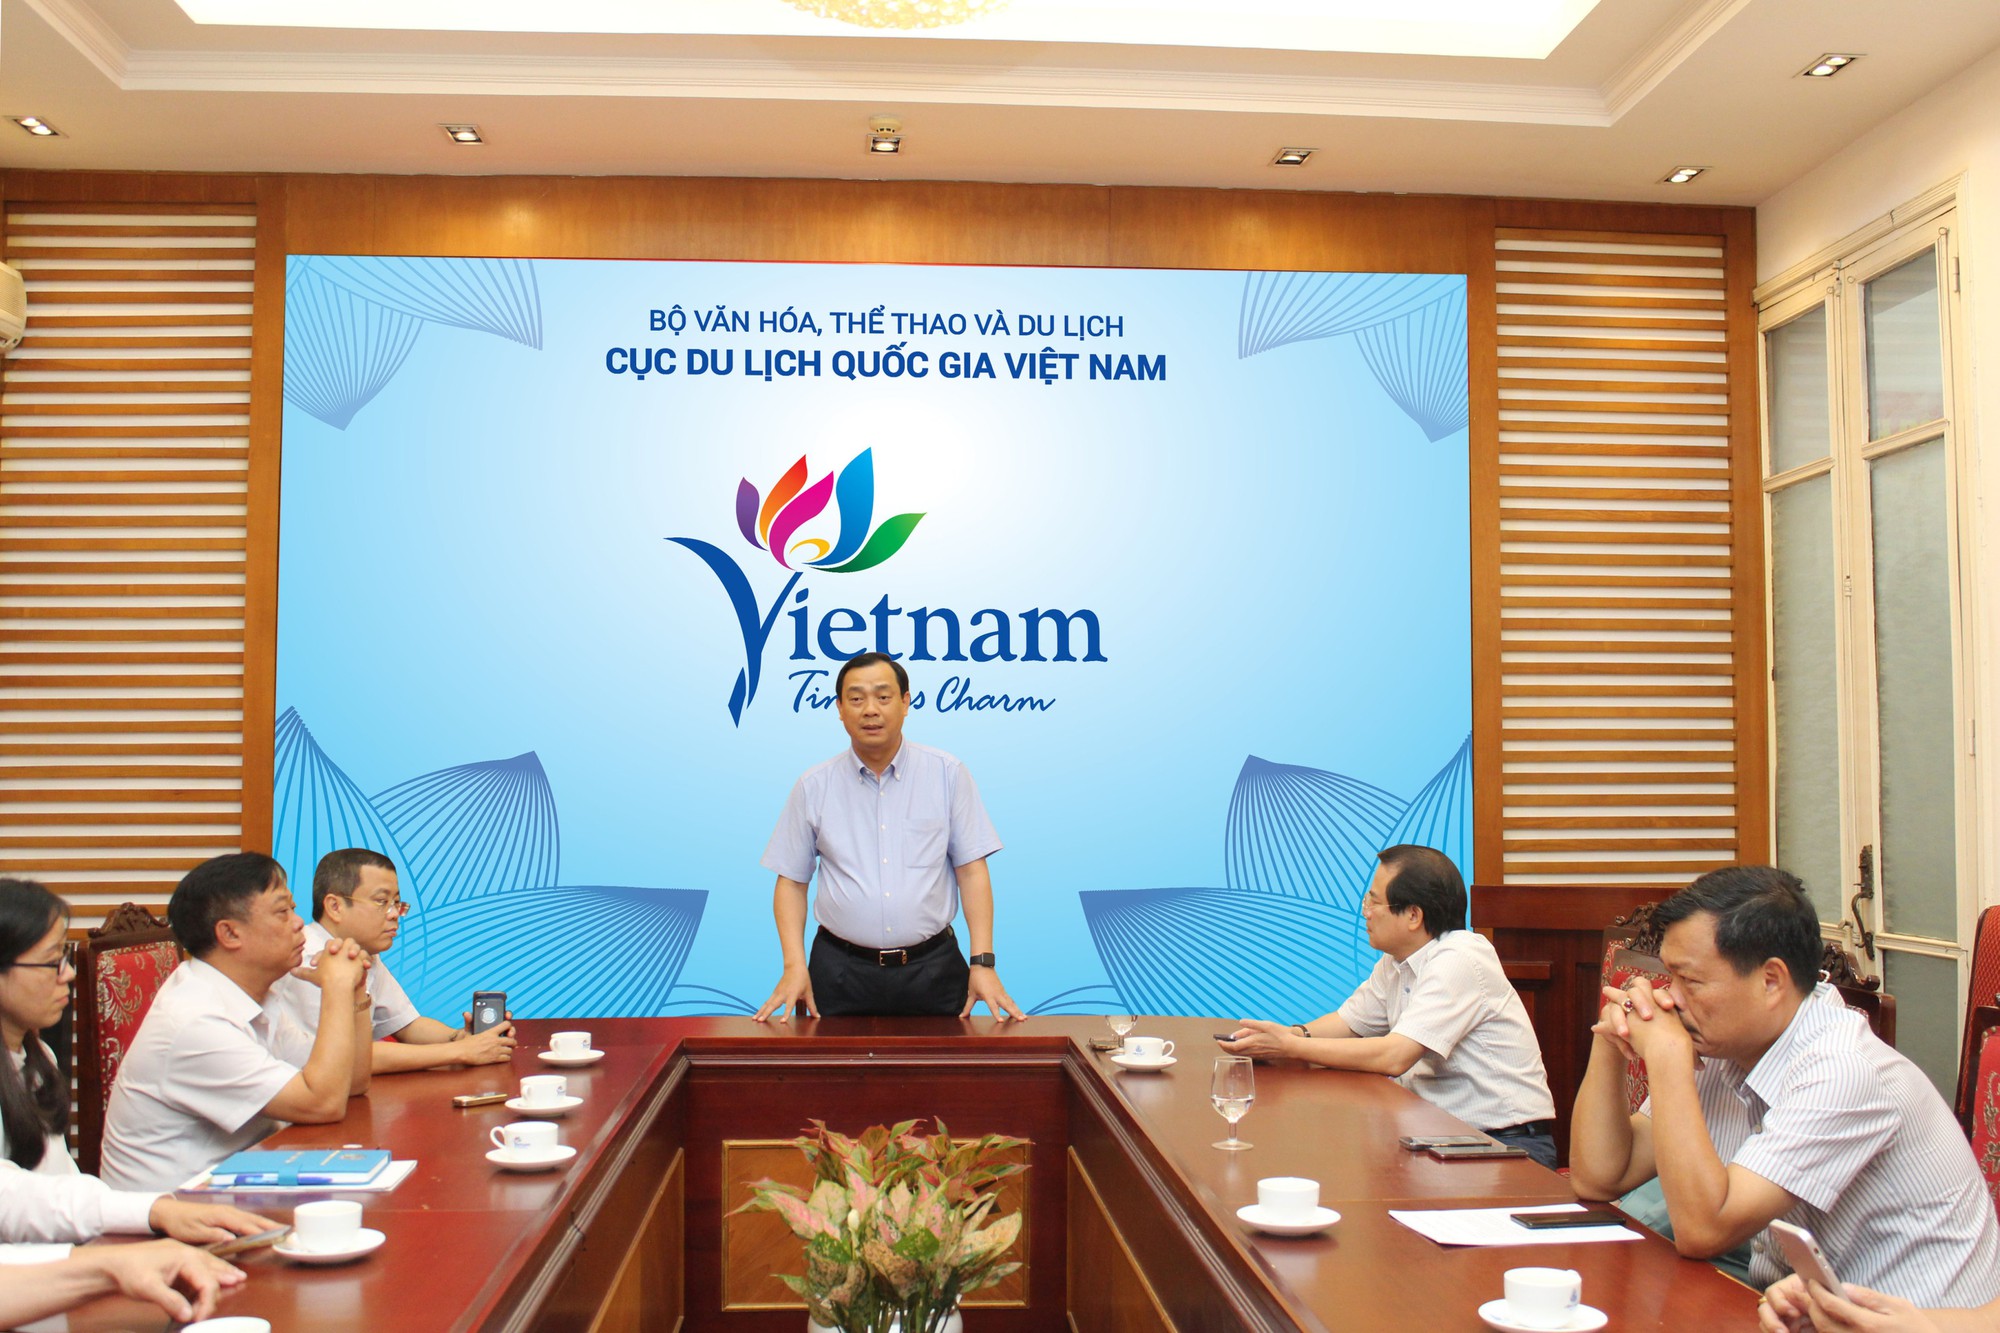 Cục Du lịch Quốc gia Việt Nam công bố Quyết định về công tác cán bộ - Ảnh 3.